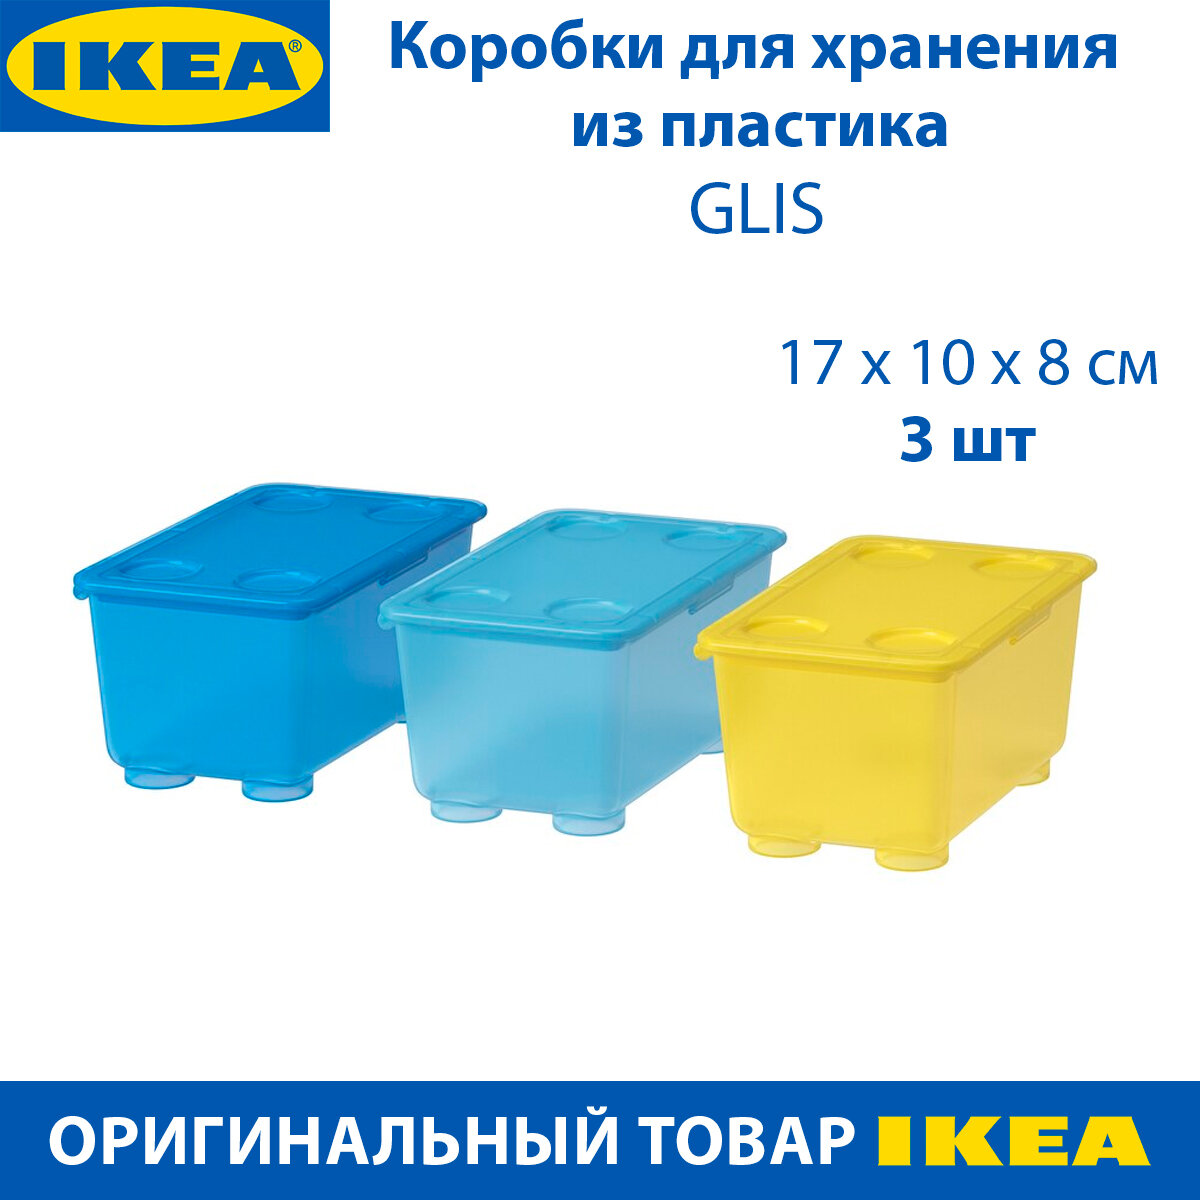 Коробка для хранения IKEA - GLIS (глис), из пластика, с крышкой, 3 шт.